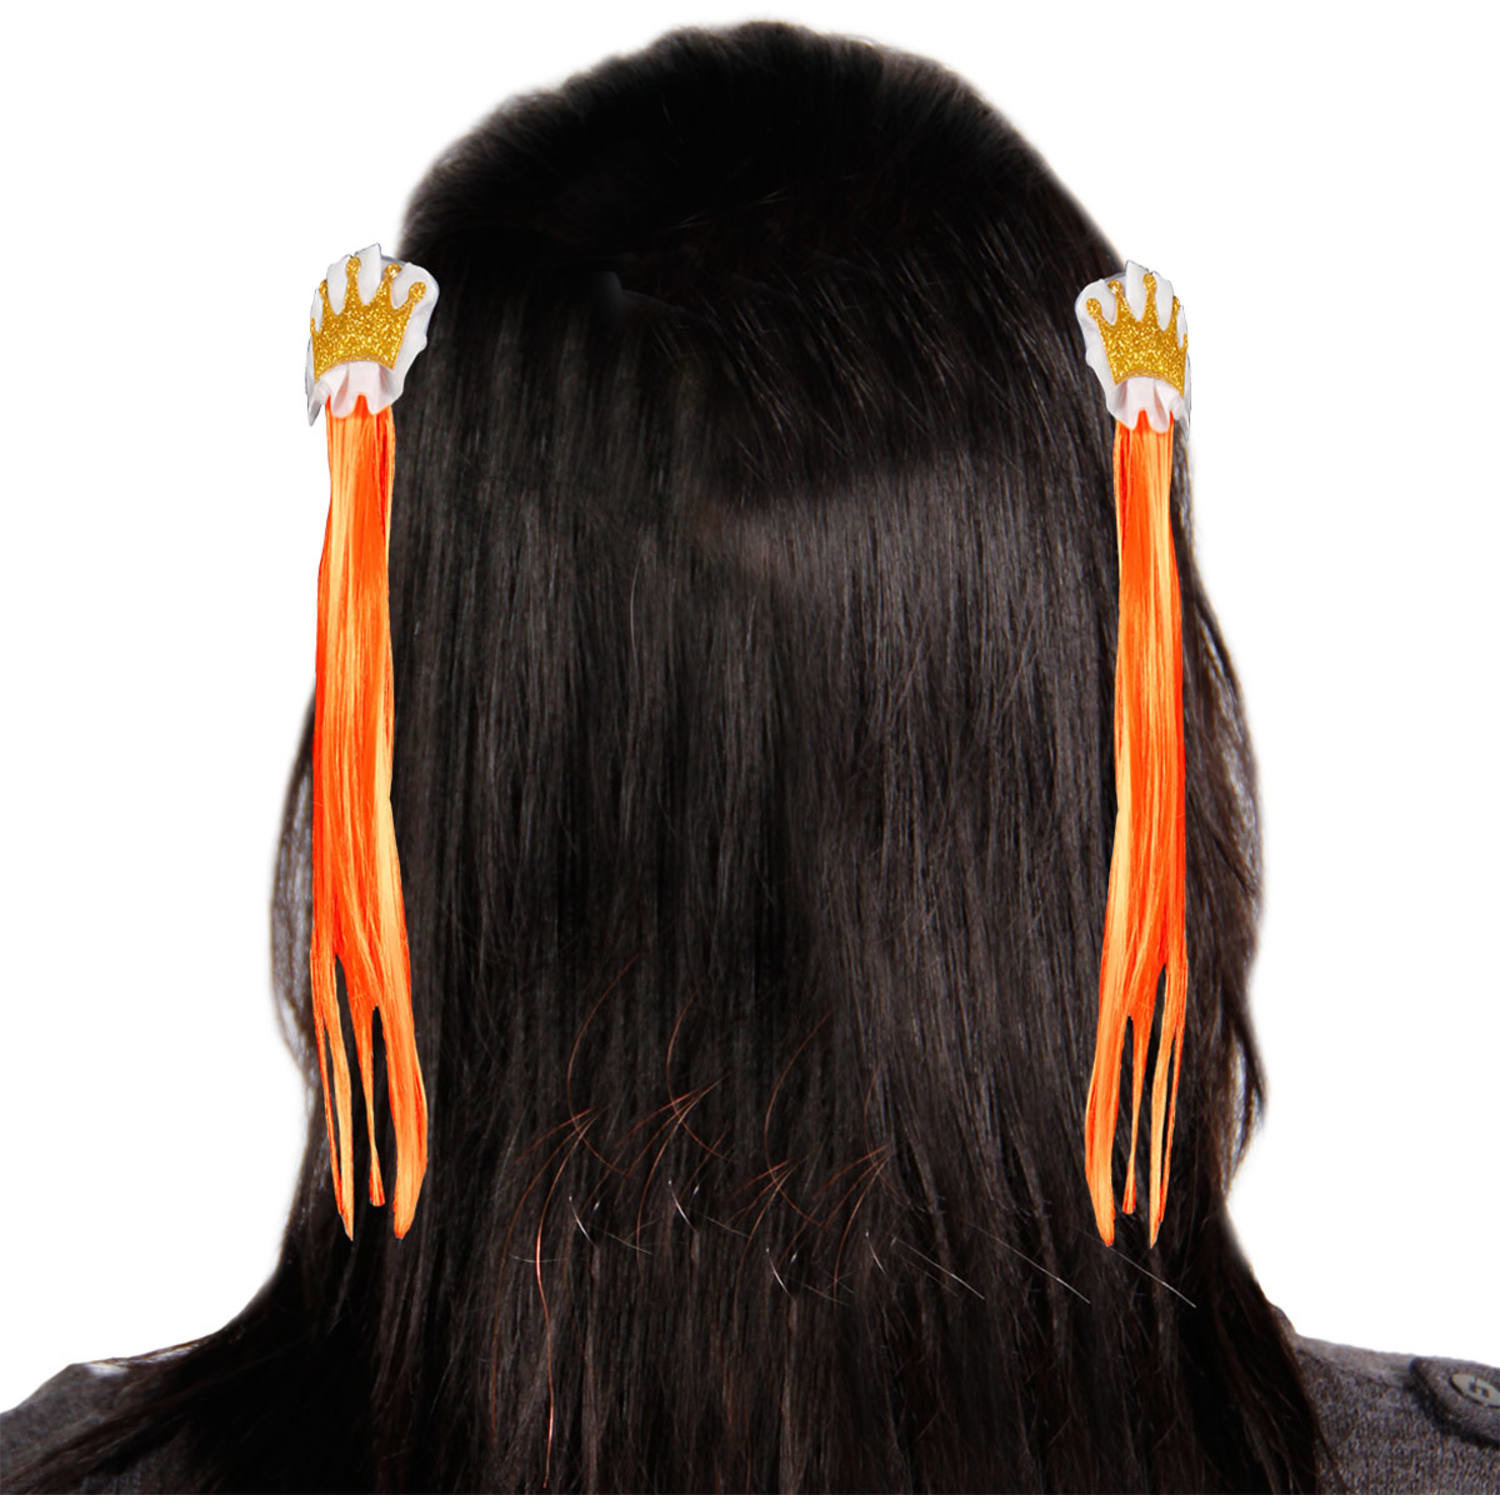 Afbeelding van 2 kroon haarspelden met oranje haar